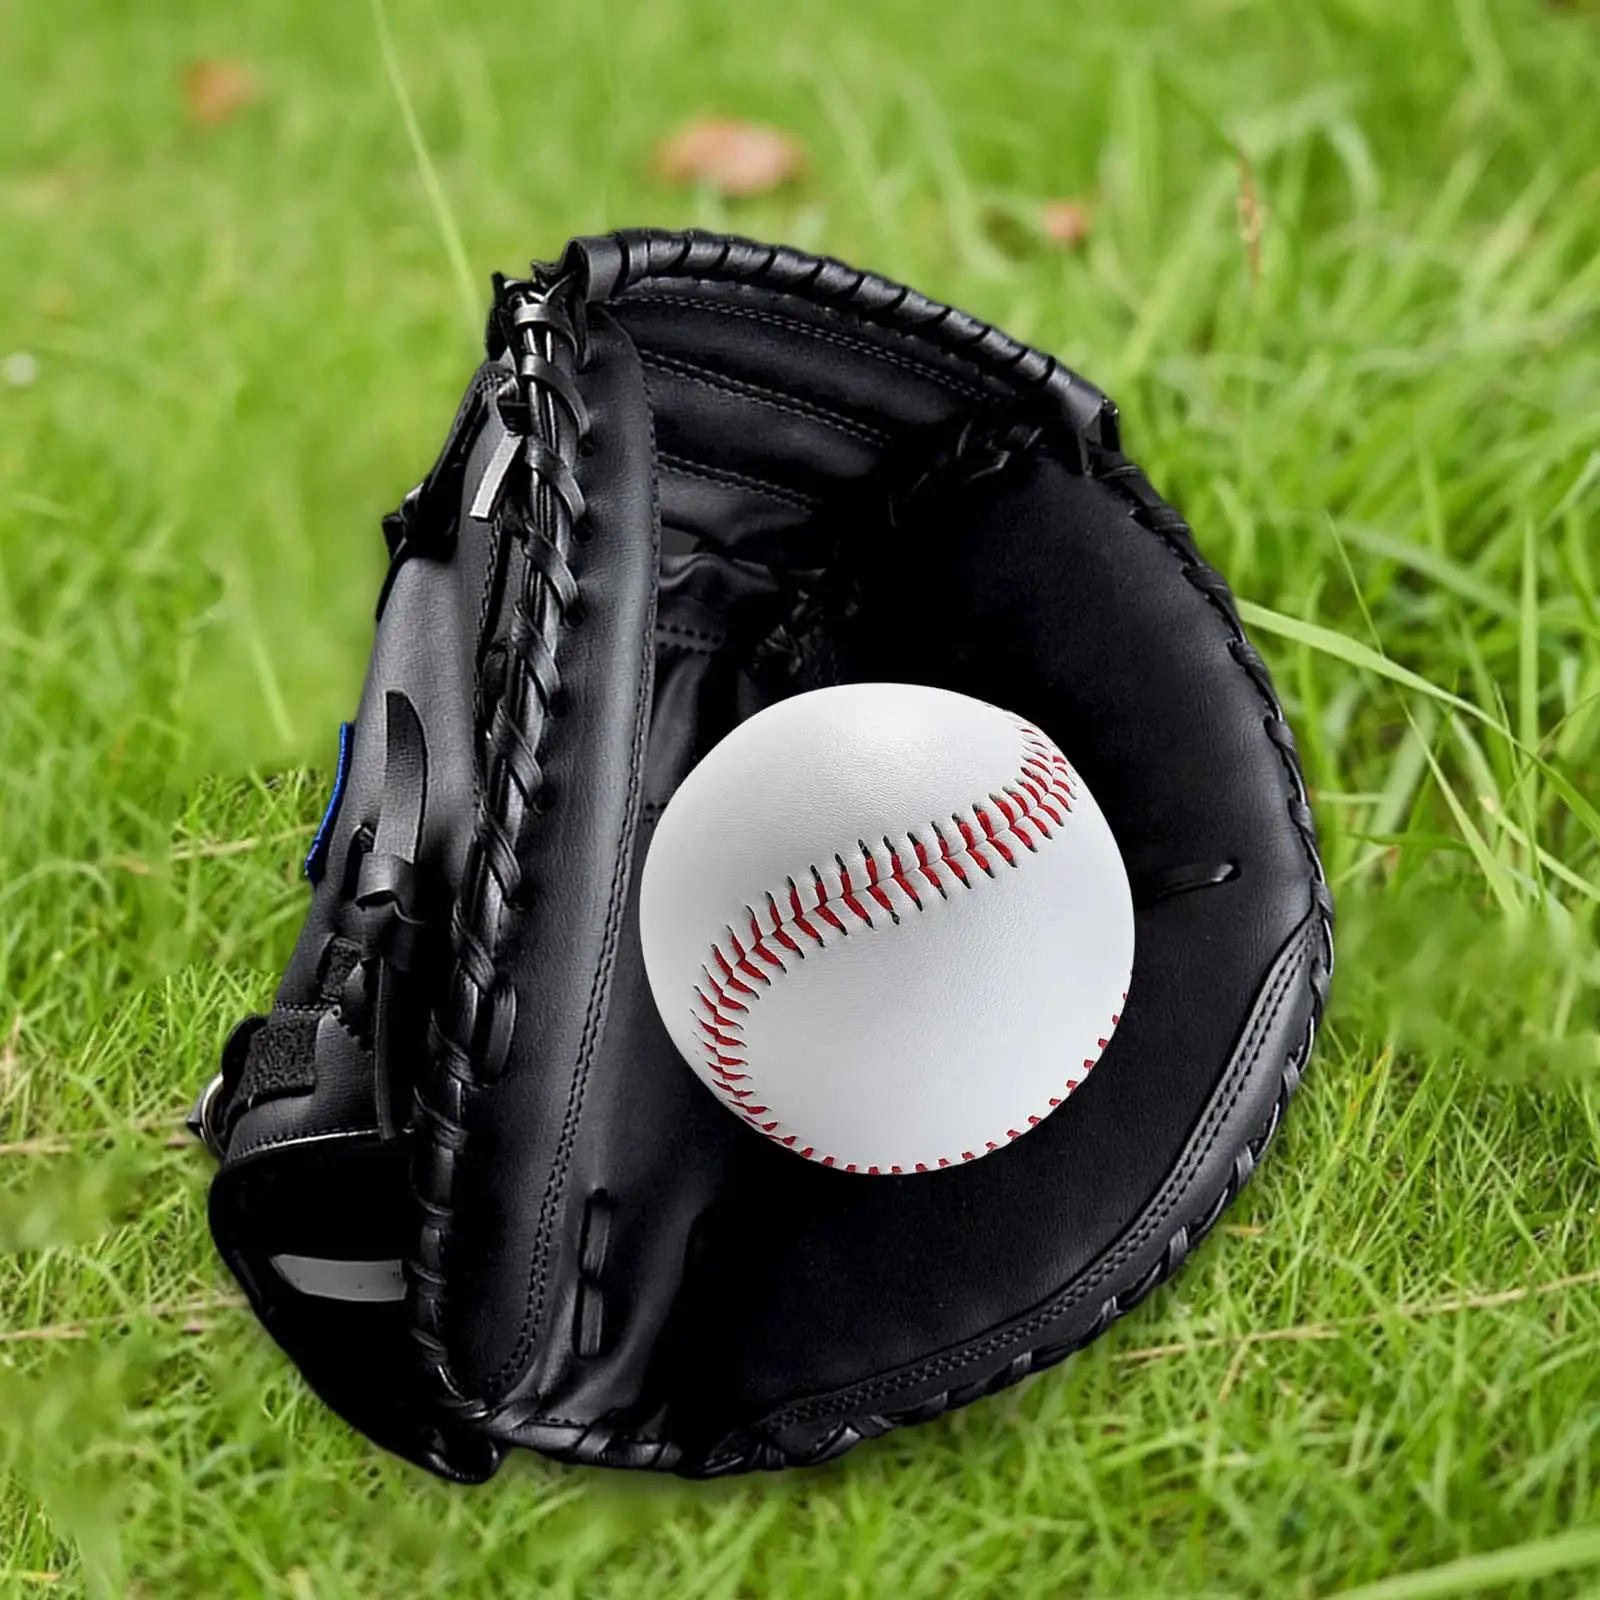 Baseball Glove for Adult, Softball Glove 12.5`` for Training and Beginner, Baseball Mitts Left Hand Glove